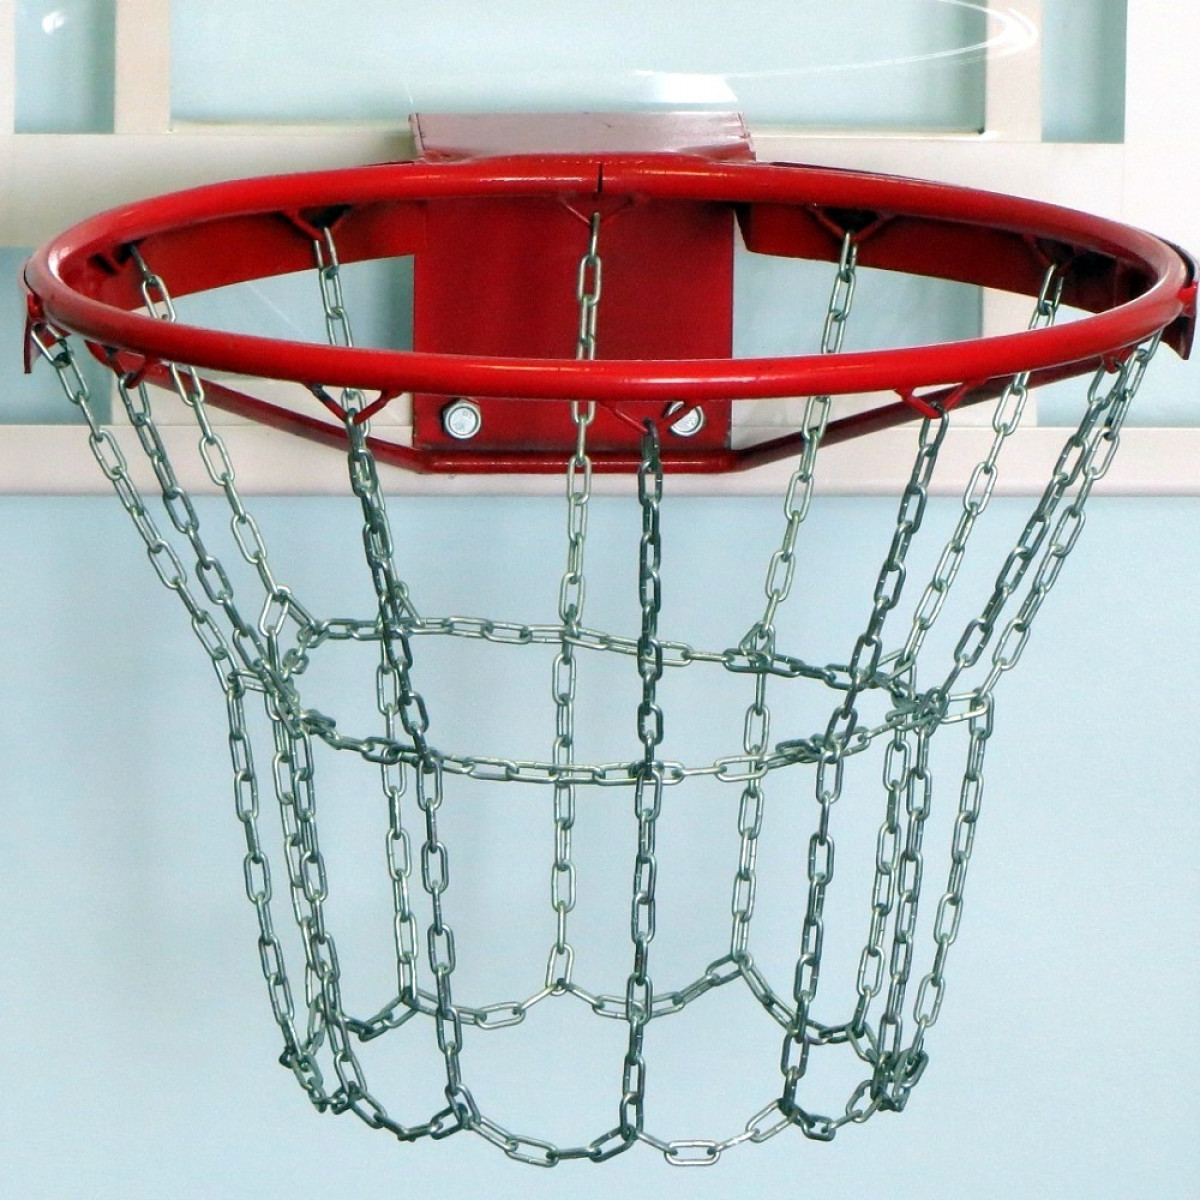 Баскетбольная сетка купить. Кольцо баскетбольное №7 d=450 мм антивандальная с цепью. Сетка антивандальная сетка-200-30-н. Сетка баскетбольная цепь антивандальная артикул 9090-08. Сетка баскетбольная g241(сб-3).